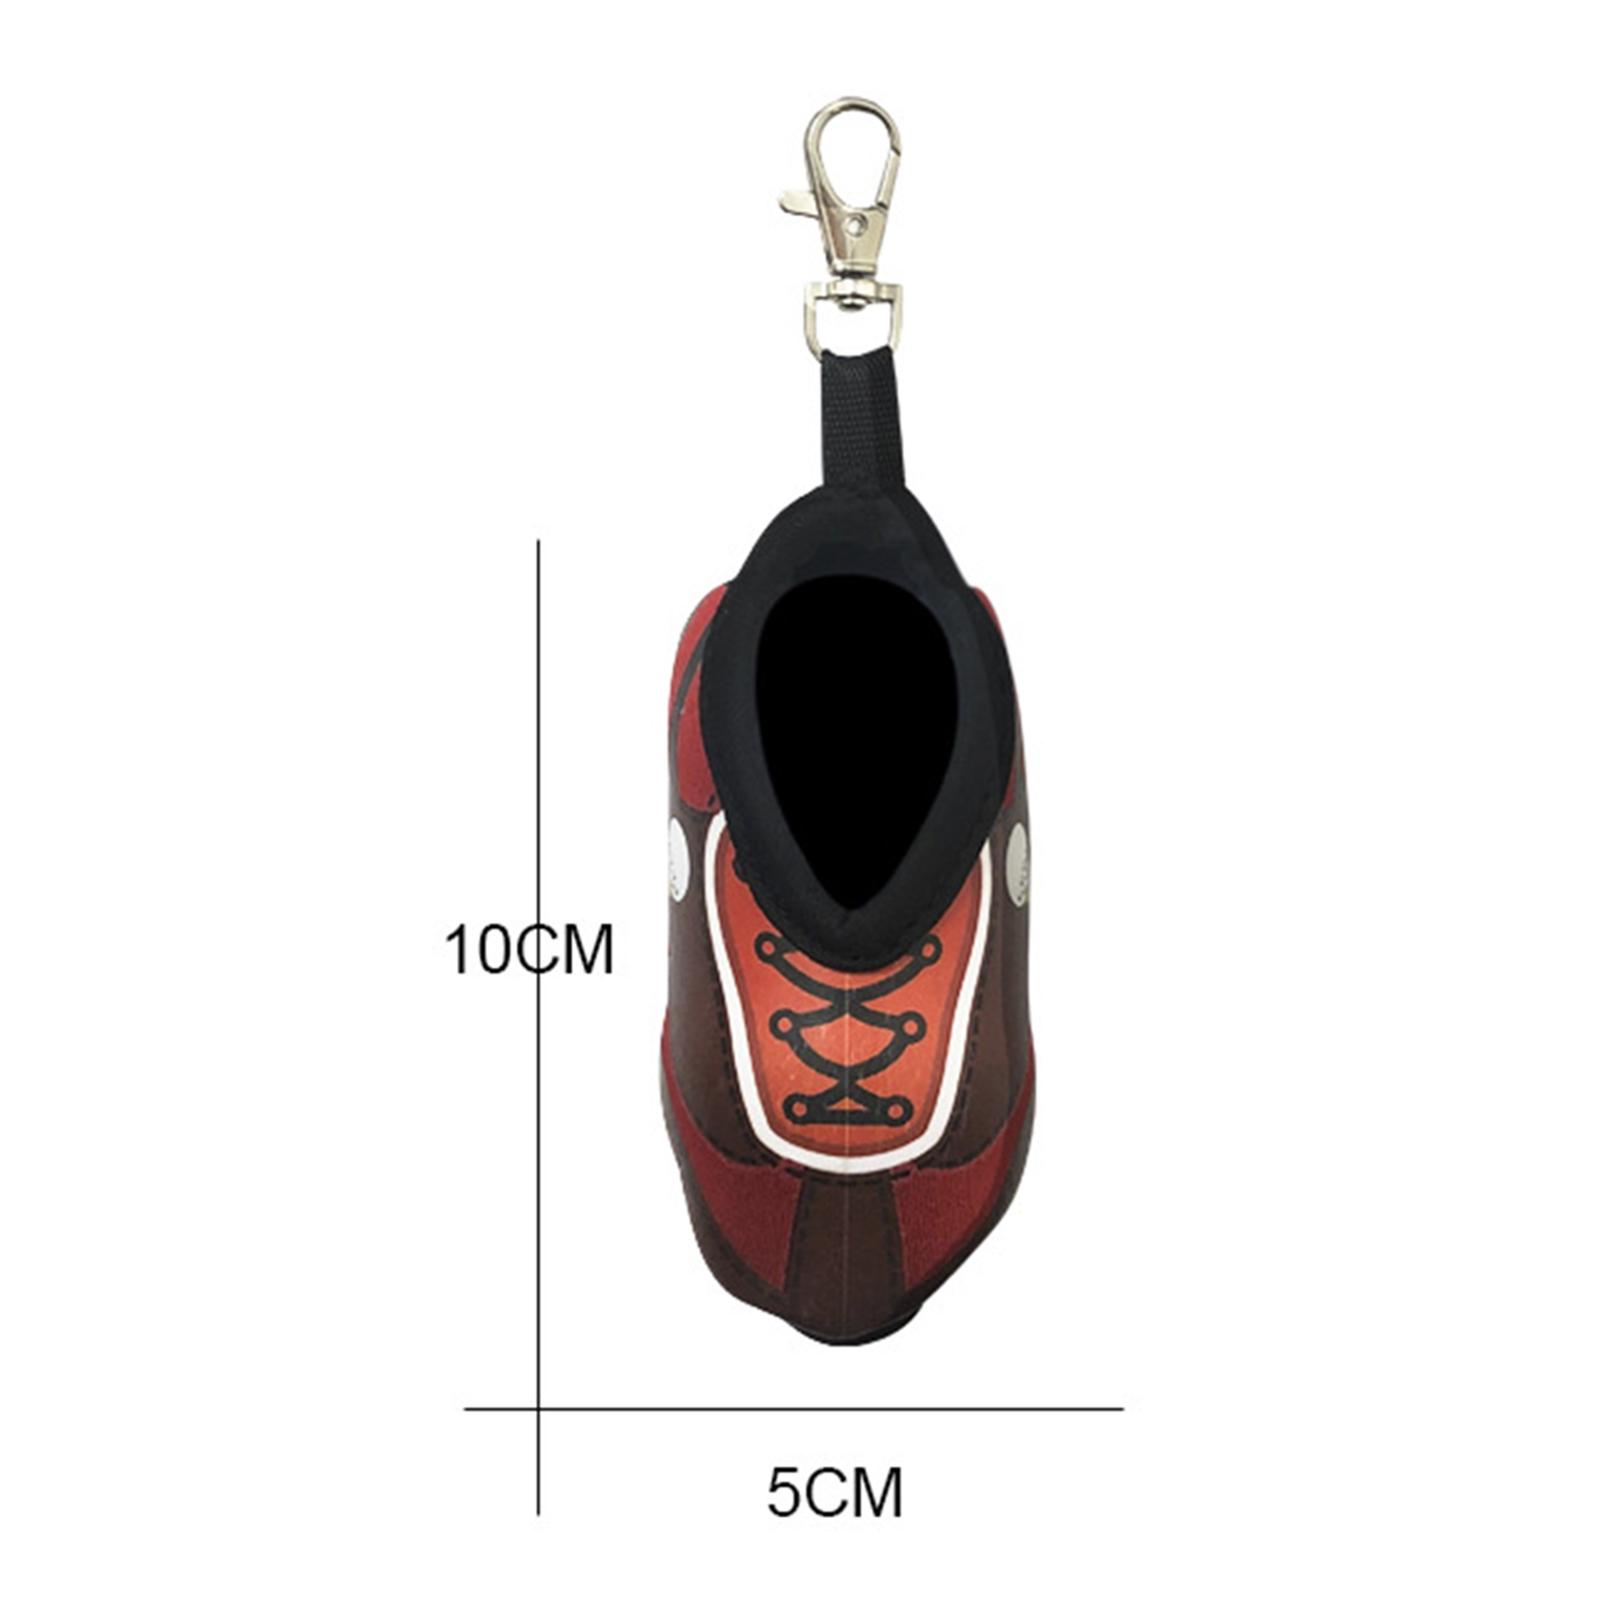 Neoprene Golf Ball Carry Bag Small Lightweight Golf Accessories Holder Red